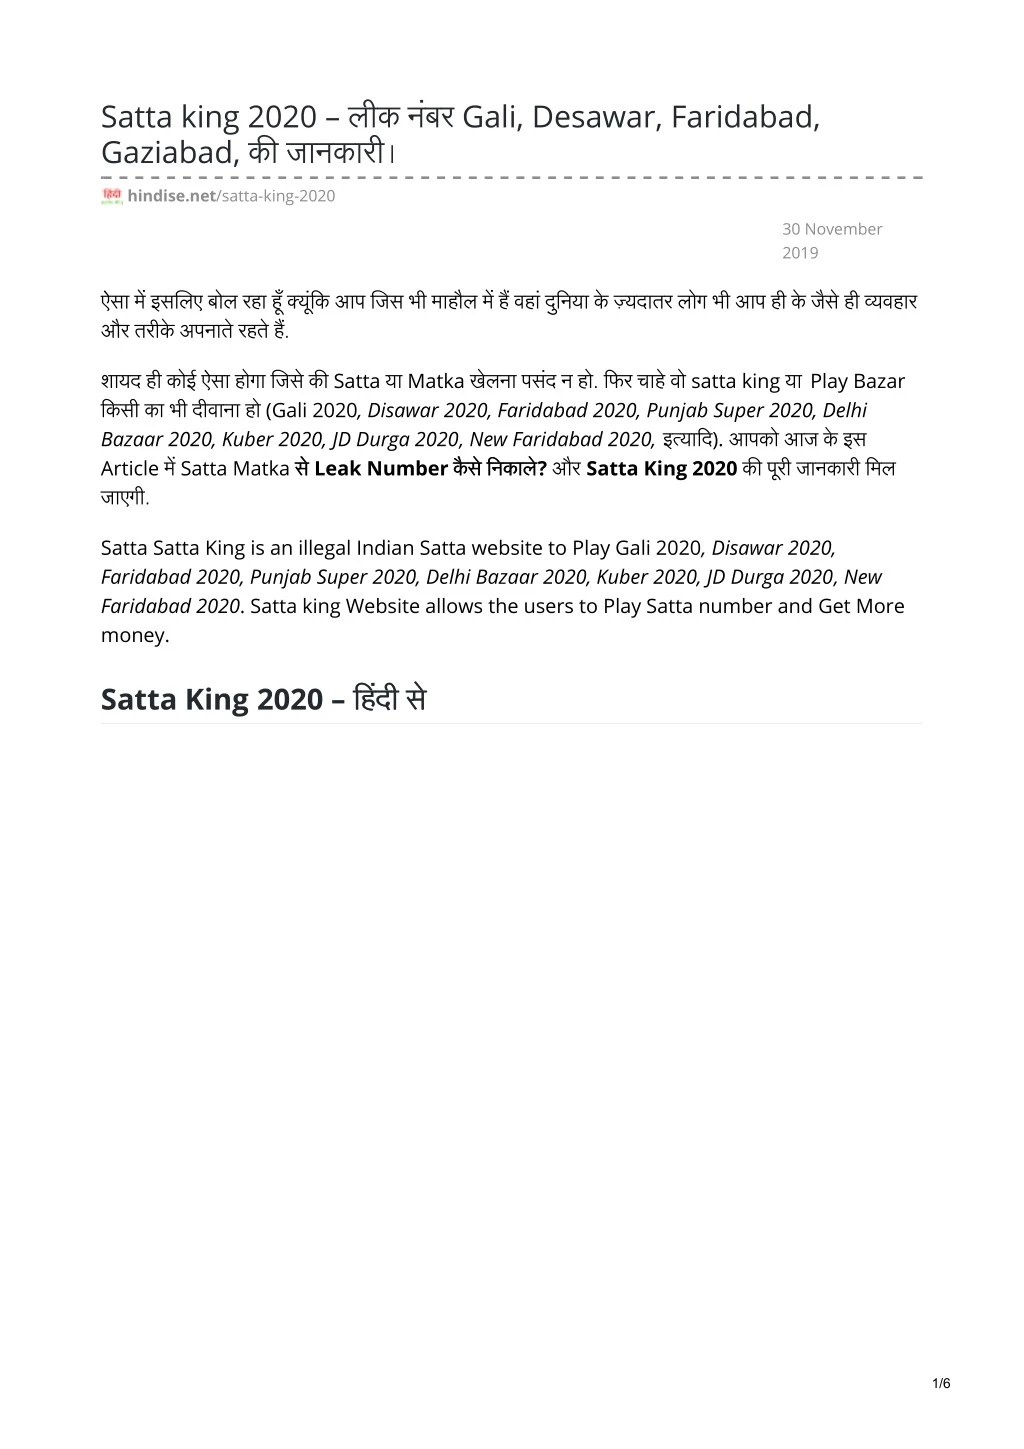 satta king 2020 gali desawar faridabad gaziabad